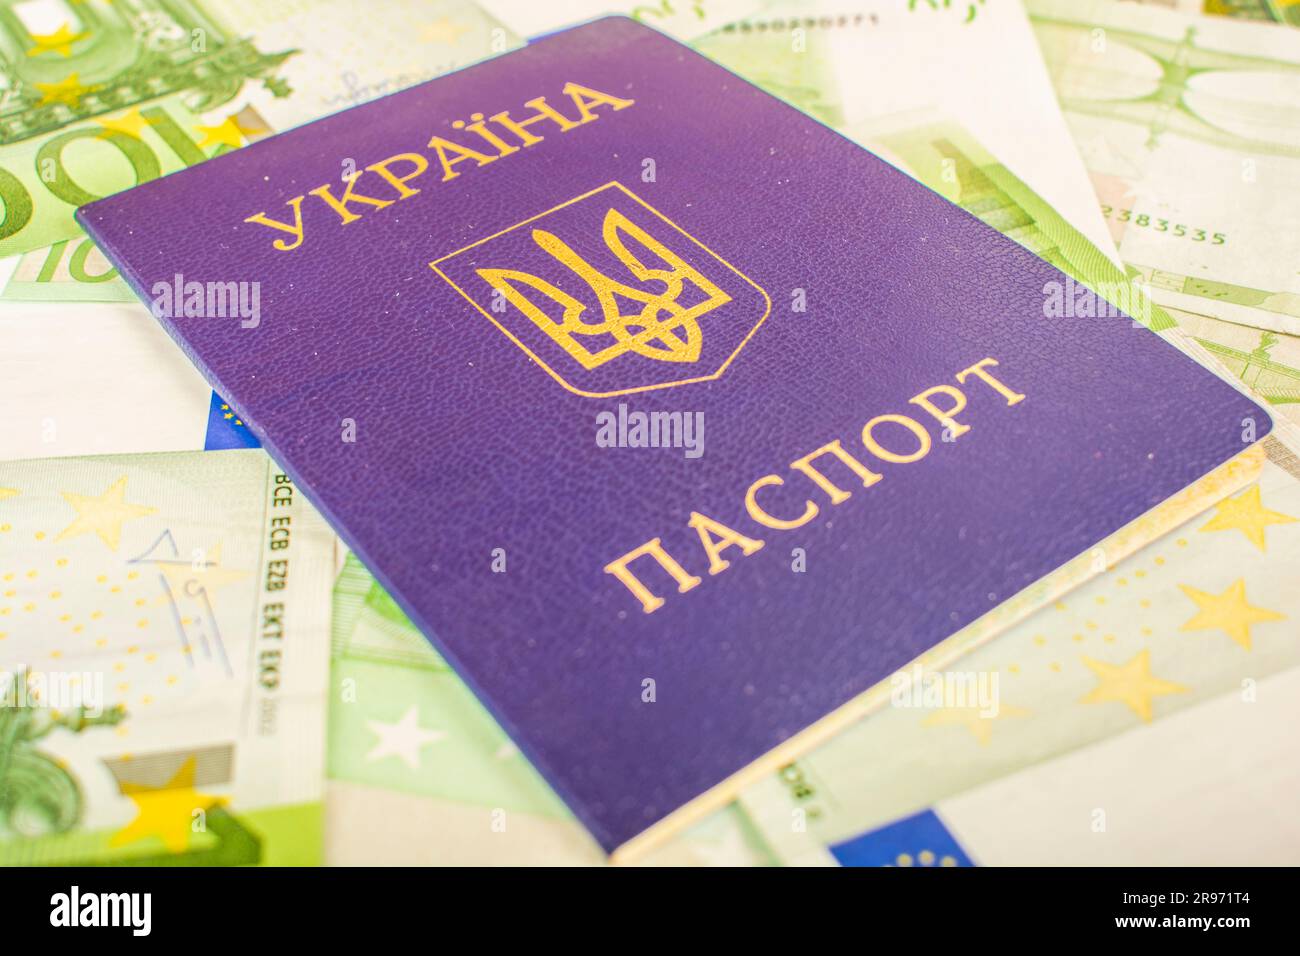 Passaporto ucraino sullo sfondo di conti in euro con un taglio di bollette verdi di 100 euro Foto Stock